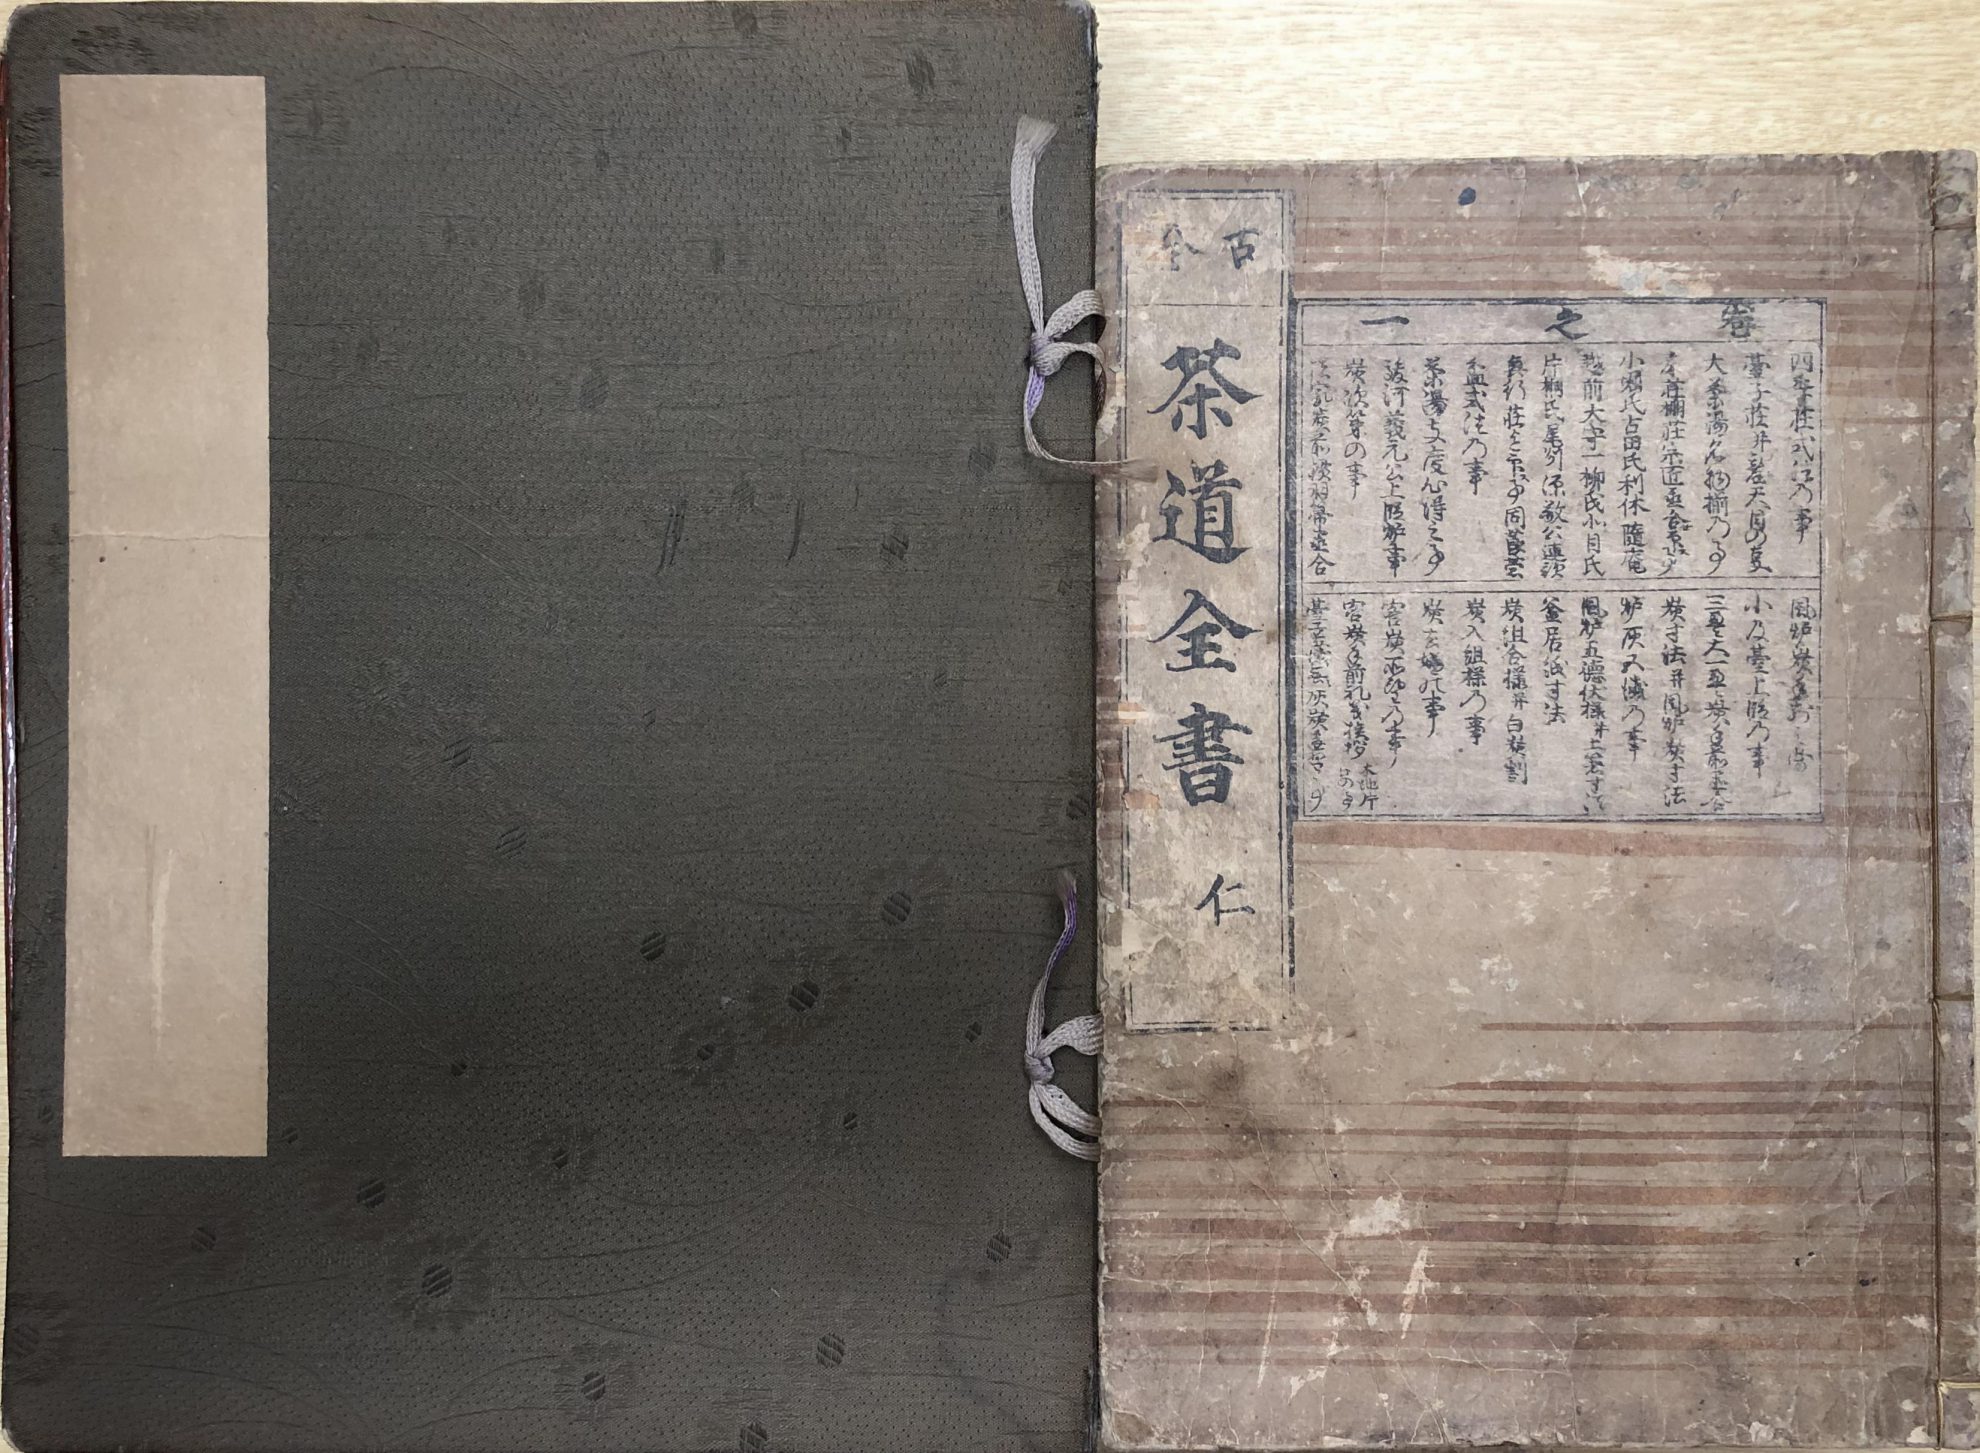 古今茶道全書ほか茶道関係の和本を宮城県より宅配買取いたしました